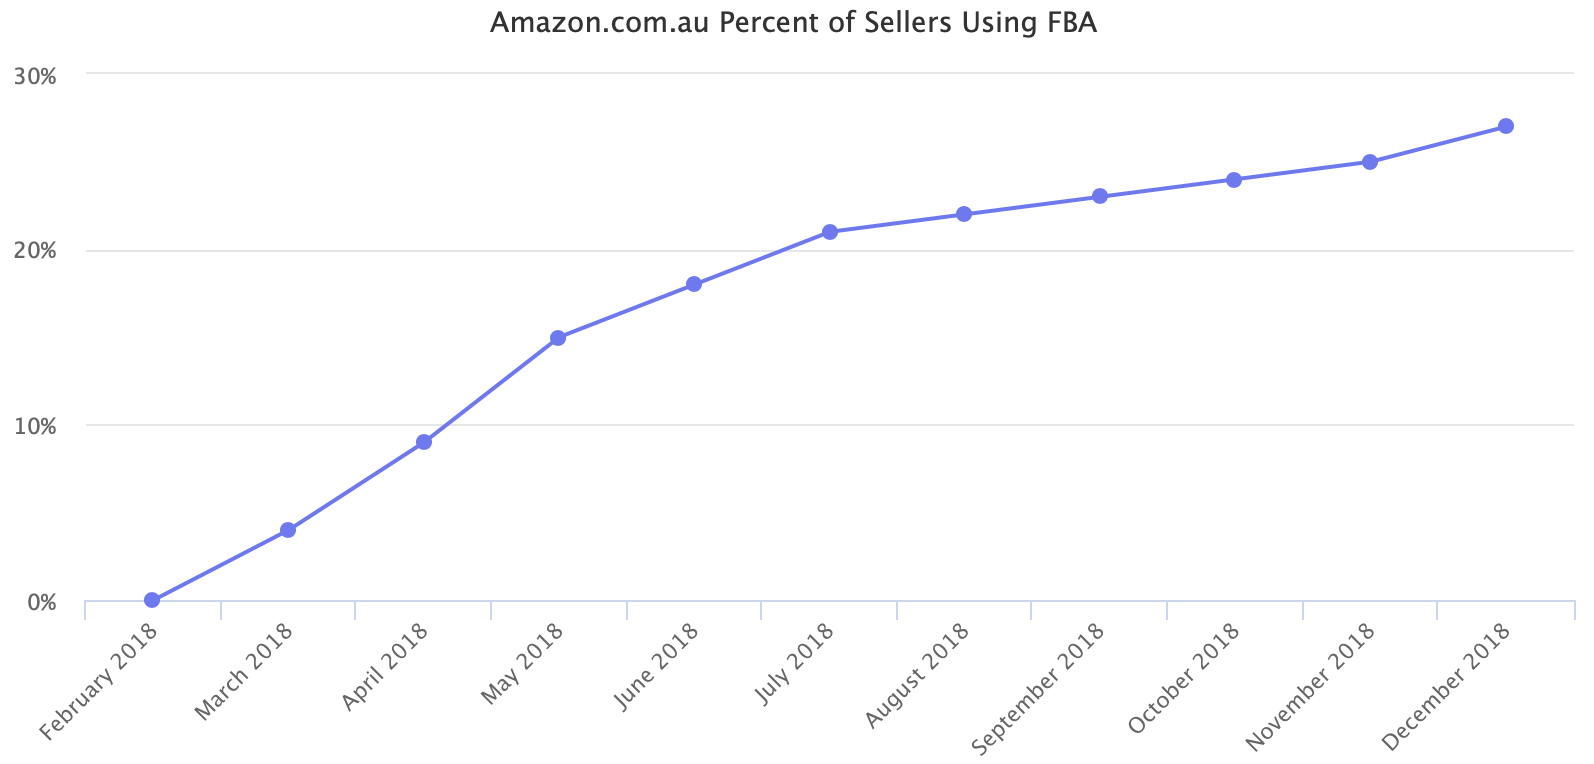 Amazon.com.au Percent of Sellers Using FBA